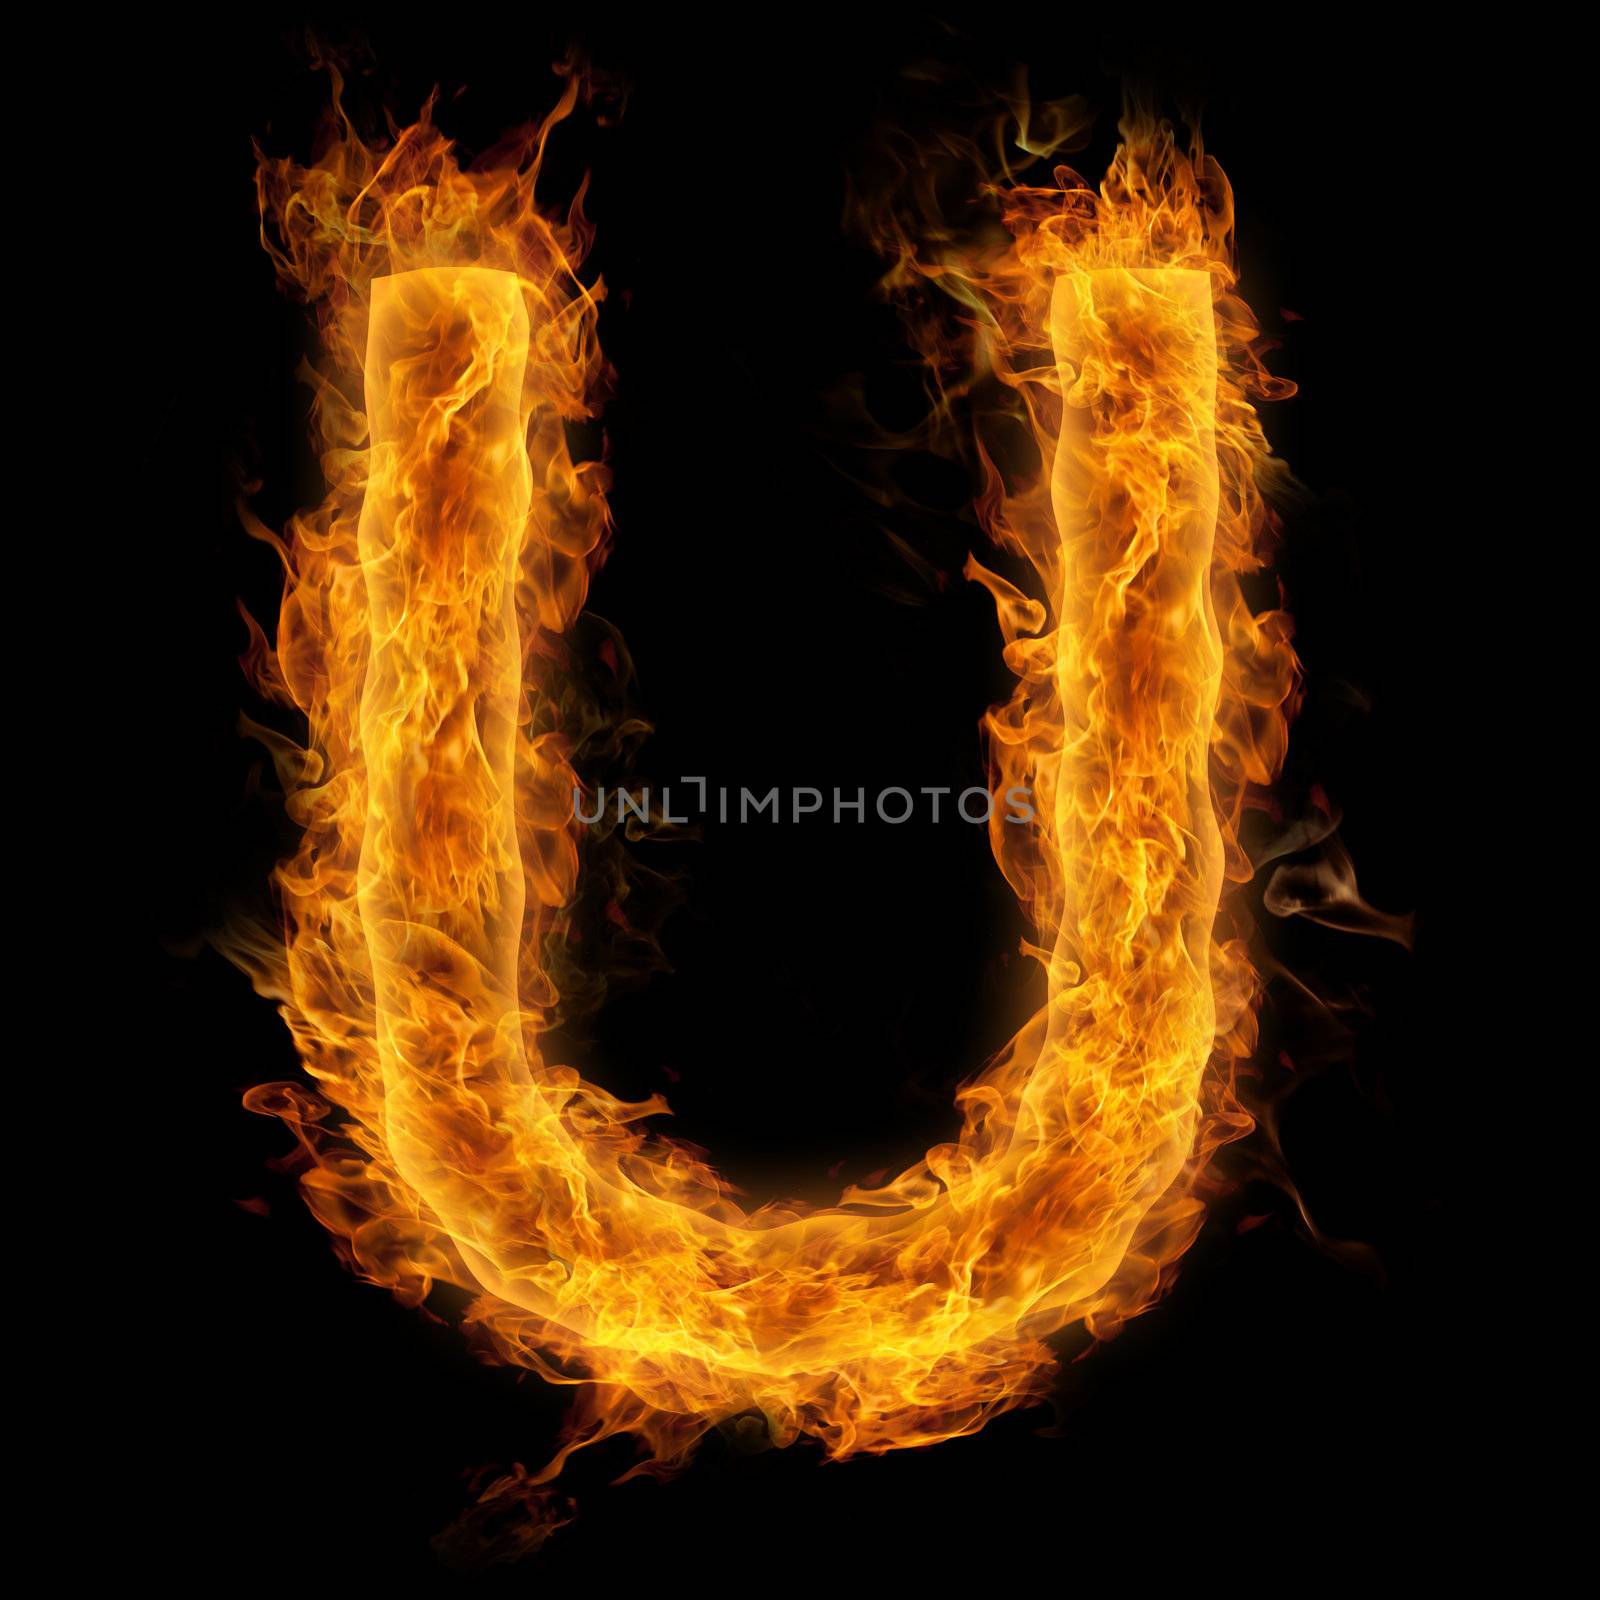 Fiery uppercase letter U